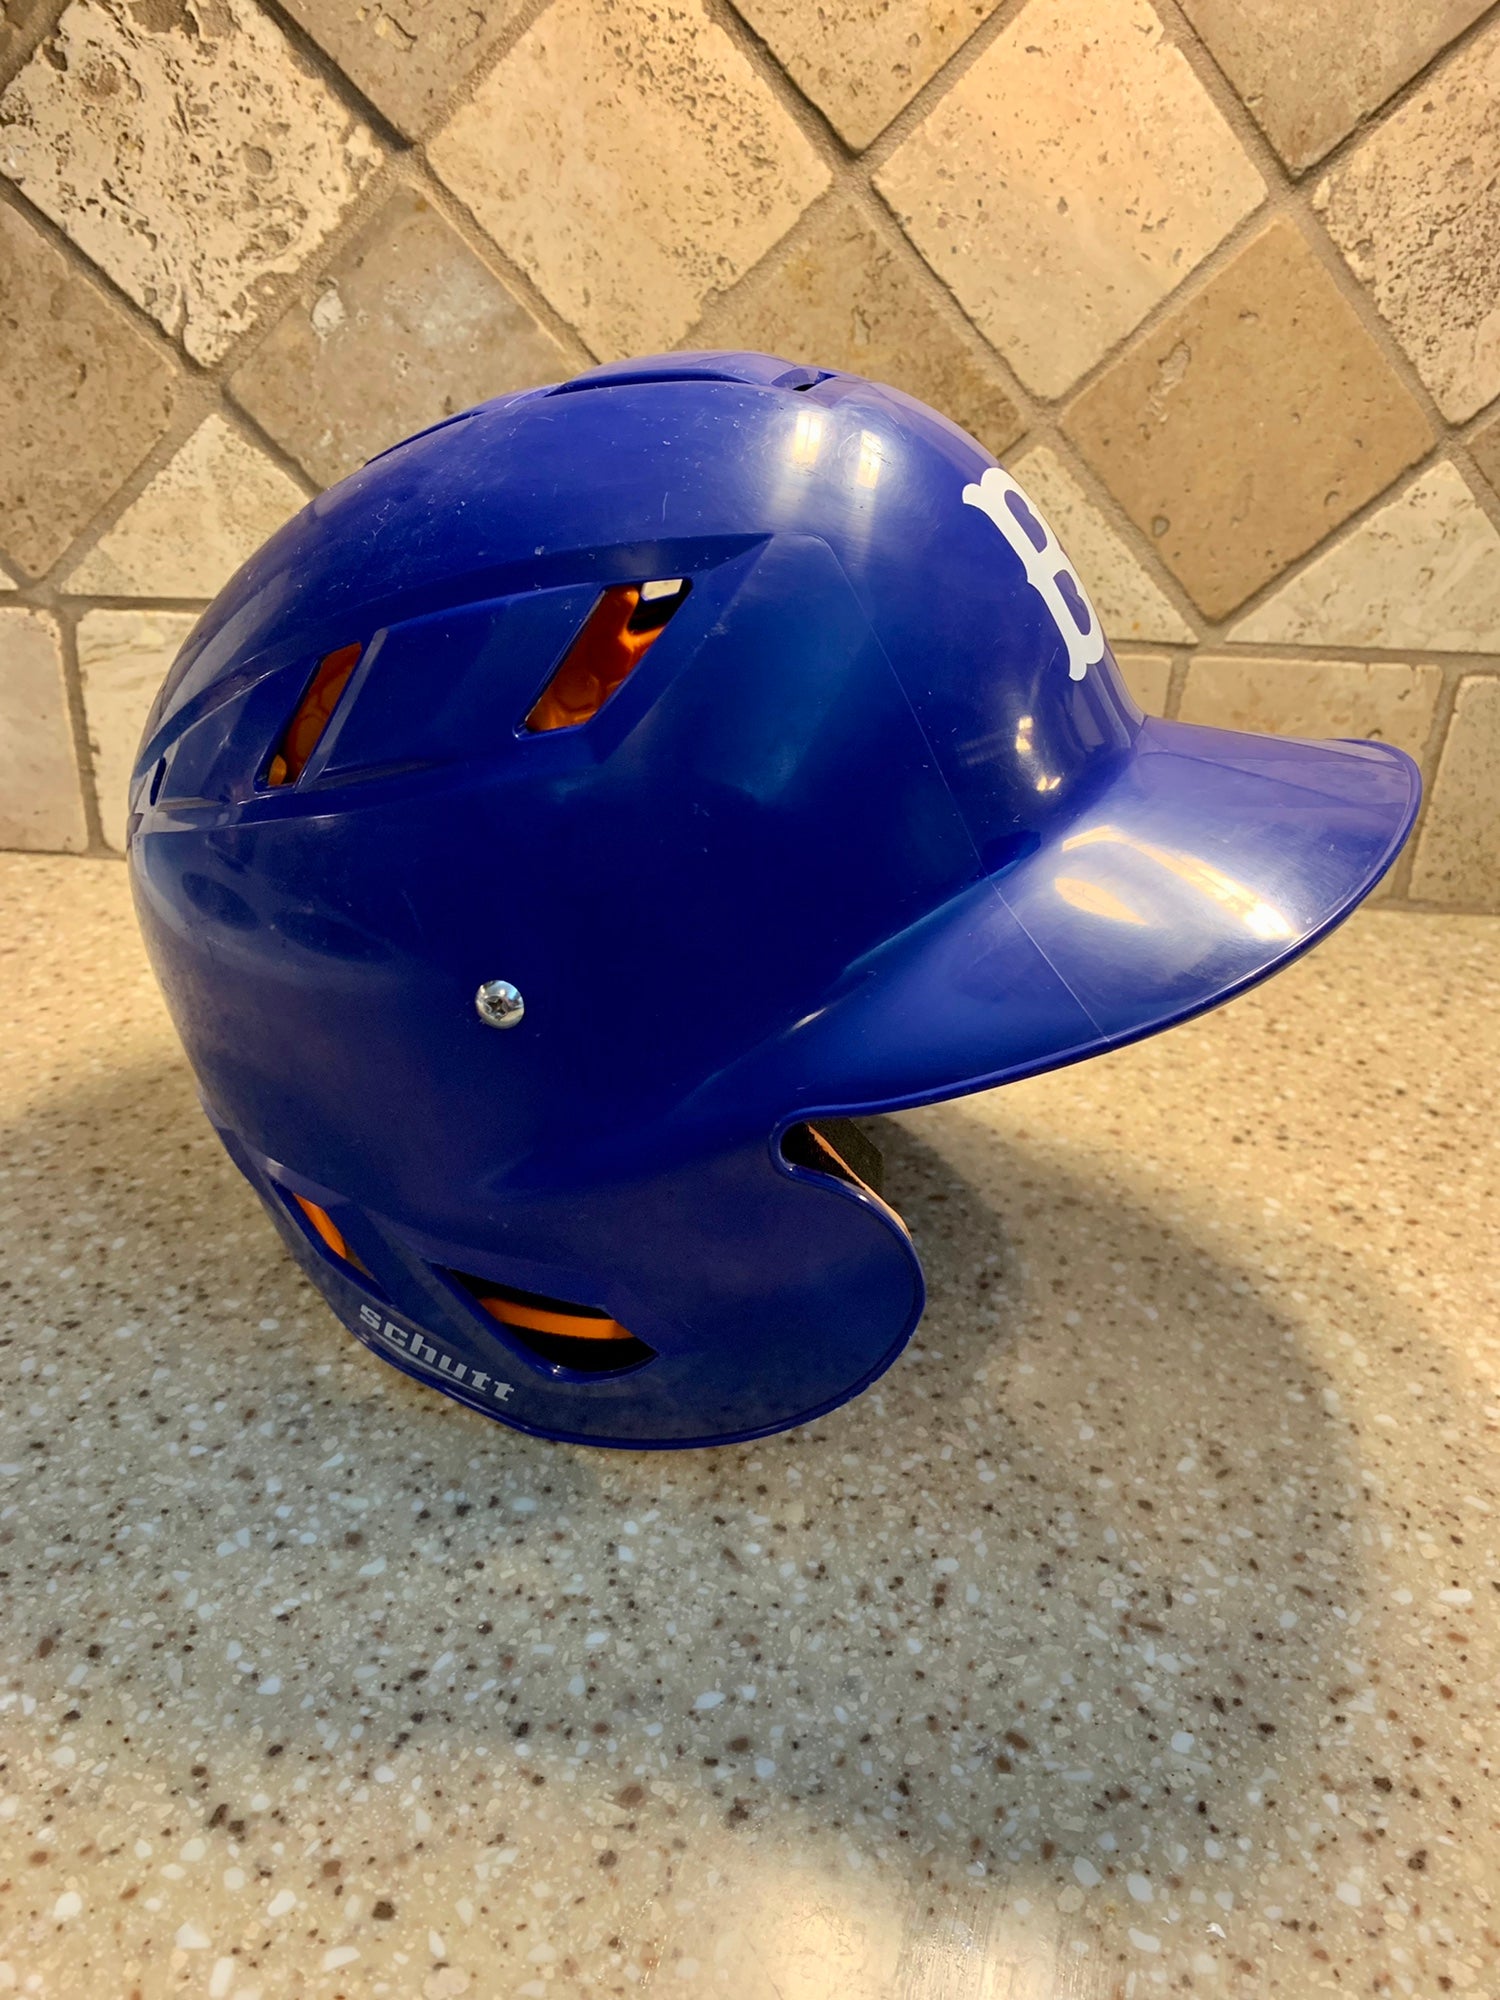 Schutt XR2 Baseball Batters Helmet Fitted